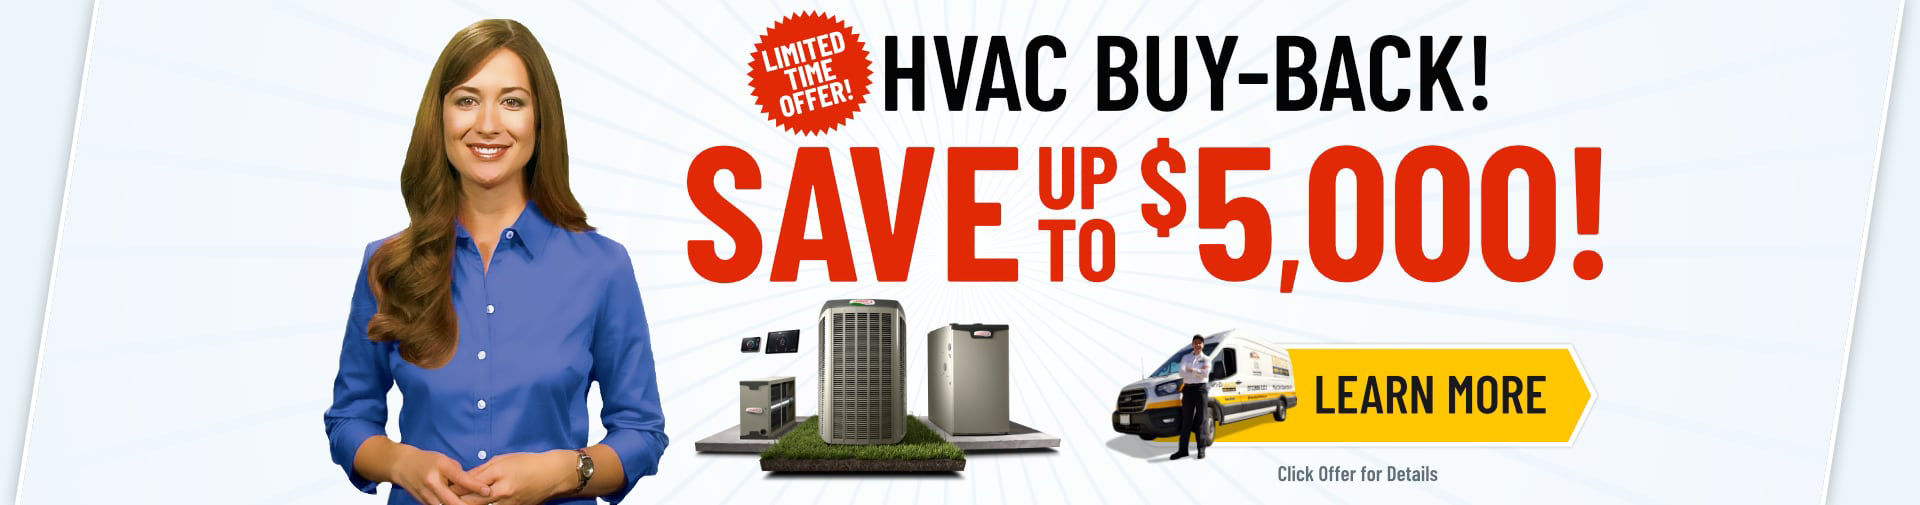 HVAC Buy-Back